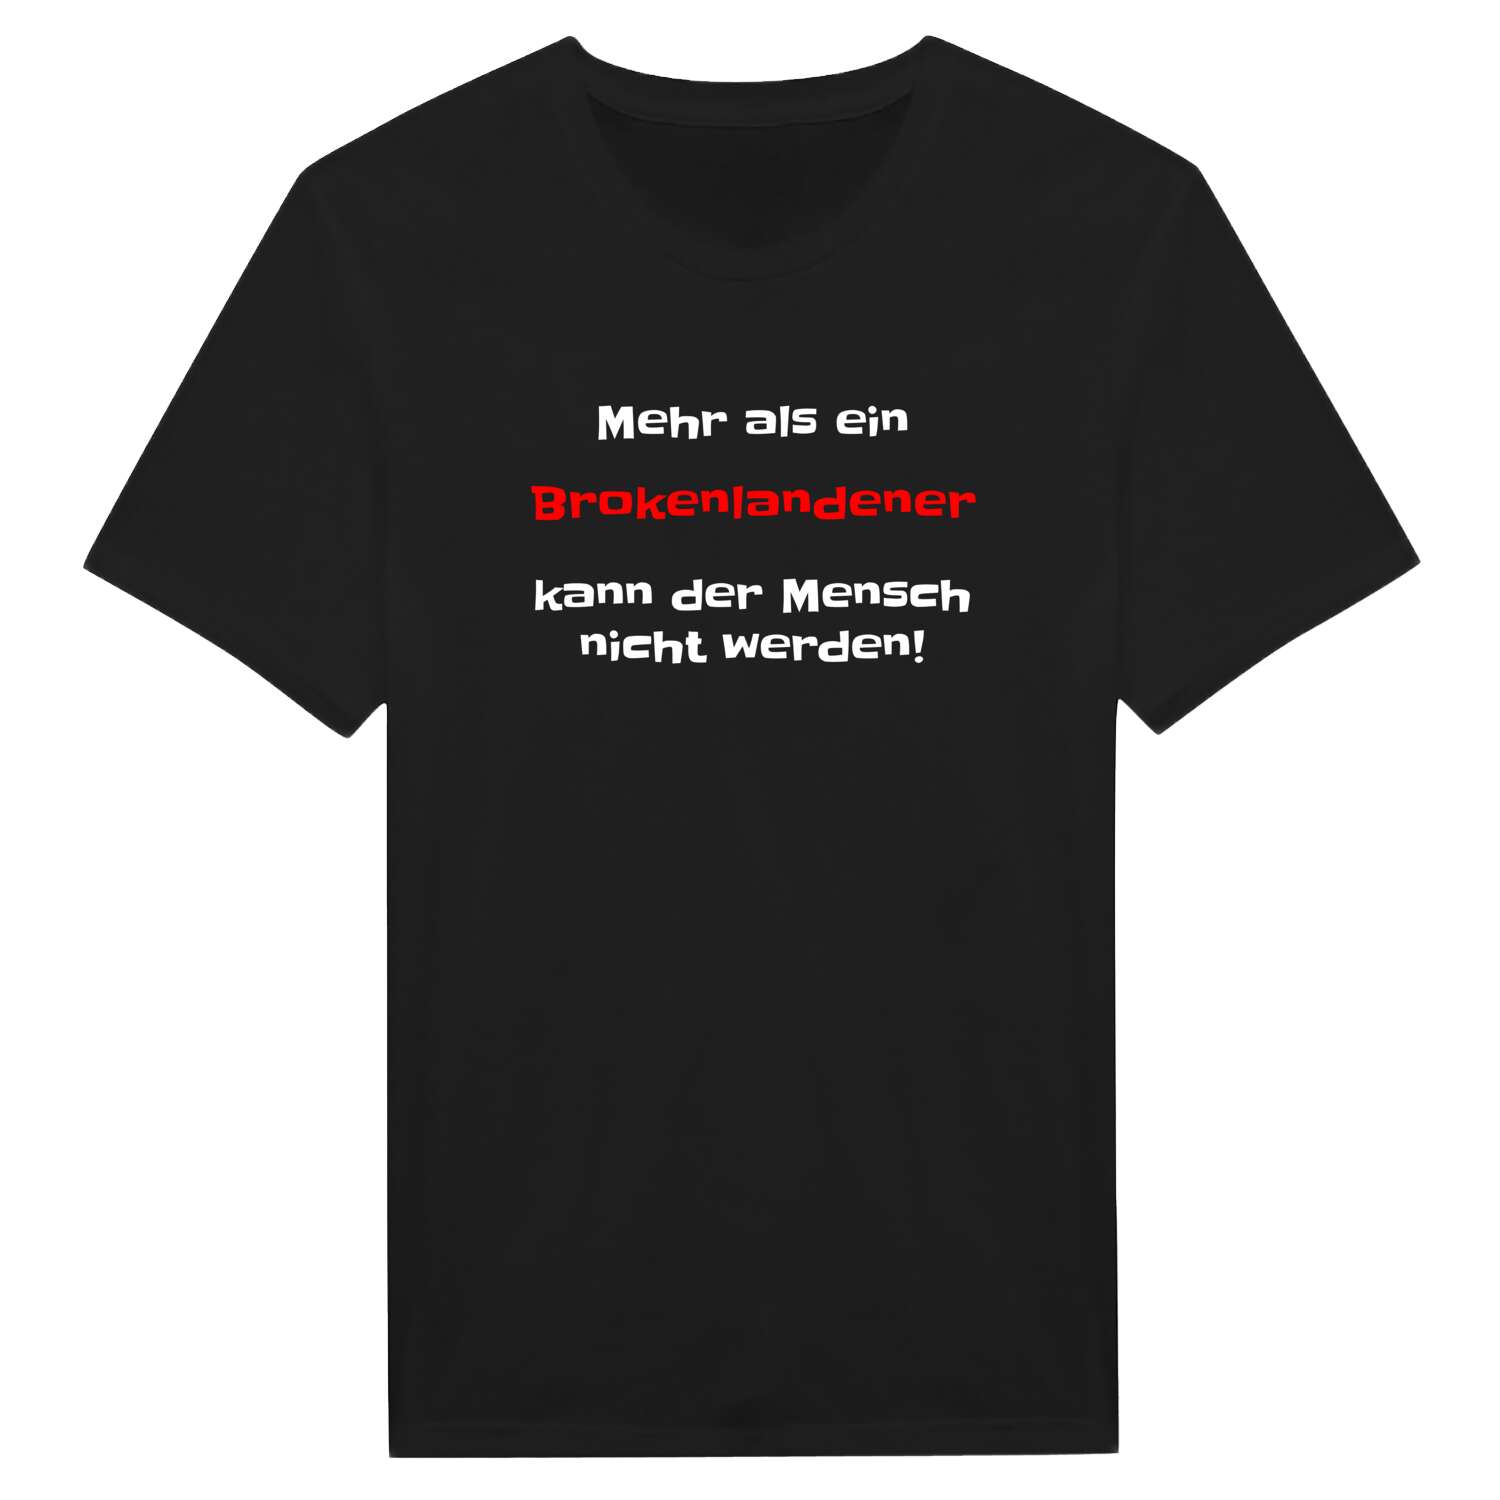 Brokenlande T-Shirt »Mehr als ein«